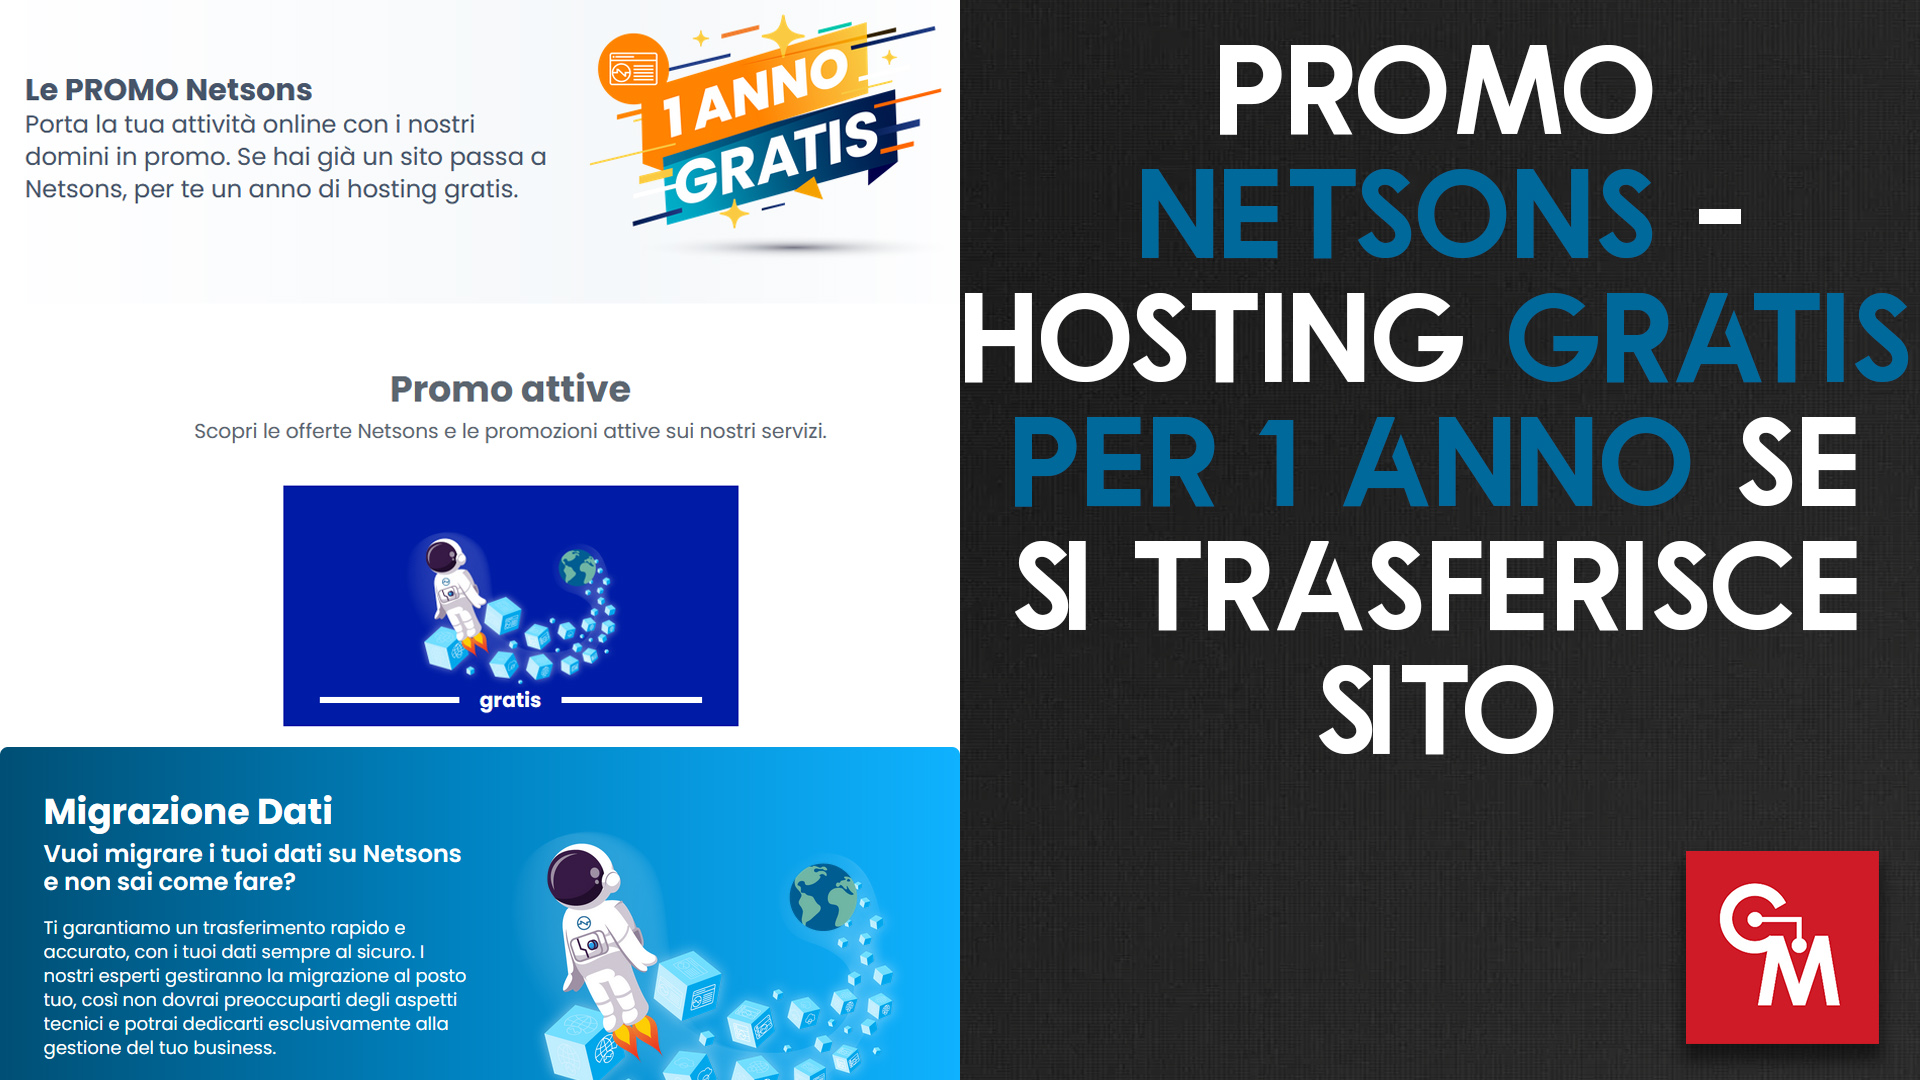 Promo Netsons – Hosting gratis per 1 anno se si trasferisce sito